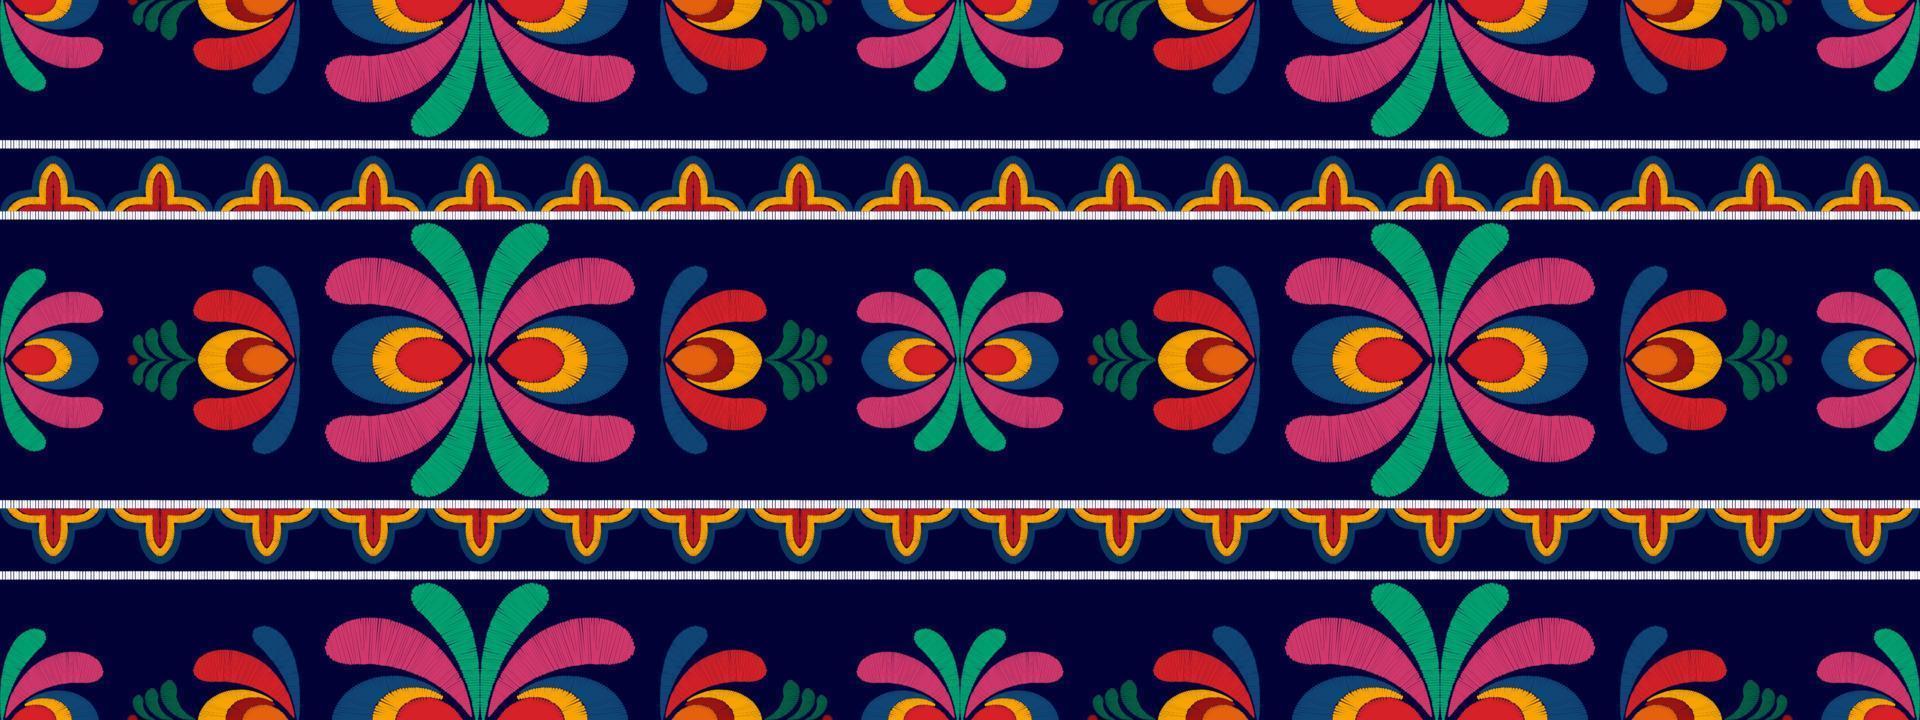 ikat blommig etnisk sömlös textilmönsterdesign. aztec tyg matta mandala ornament textil dekorationer tapet. tribal boho infödda blomma motiv traditionell broderi vektor bakgrund